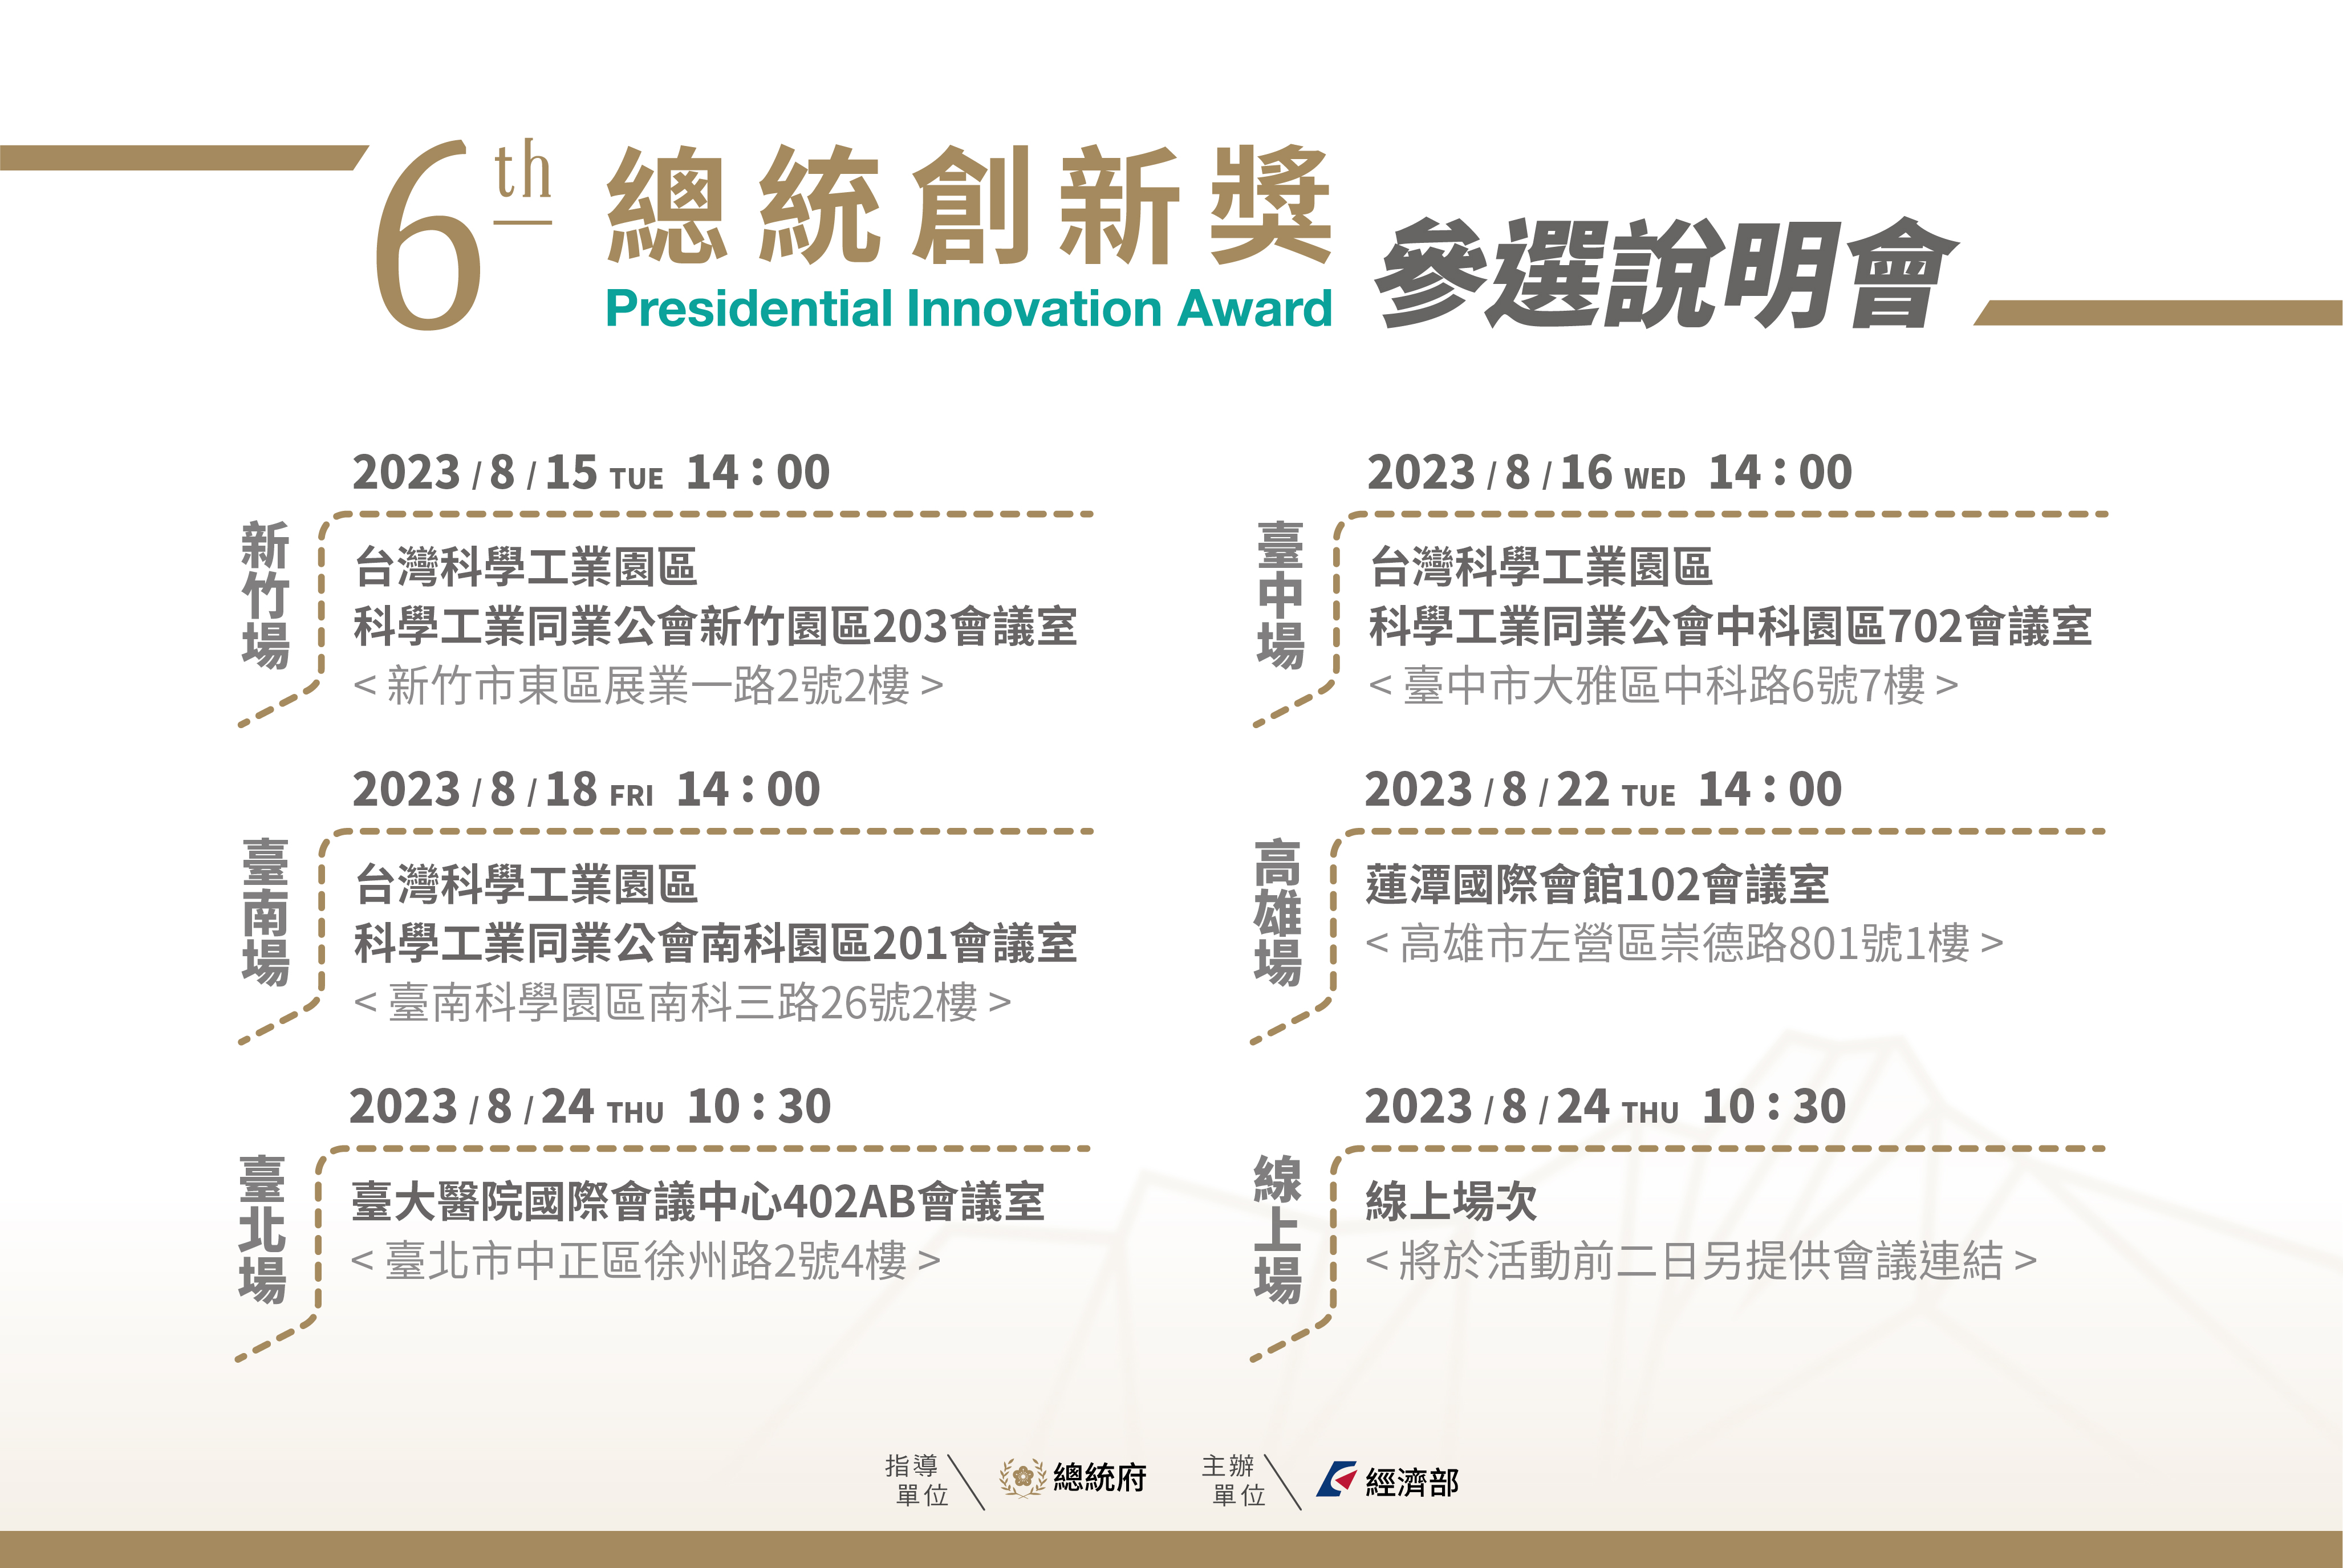 第六屆總統創新獎參選說明會，敬邀報名參加